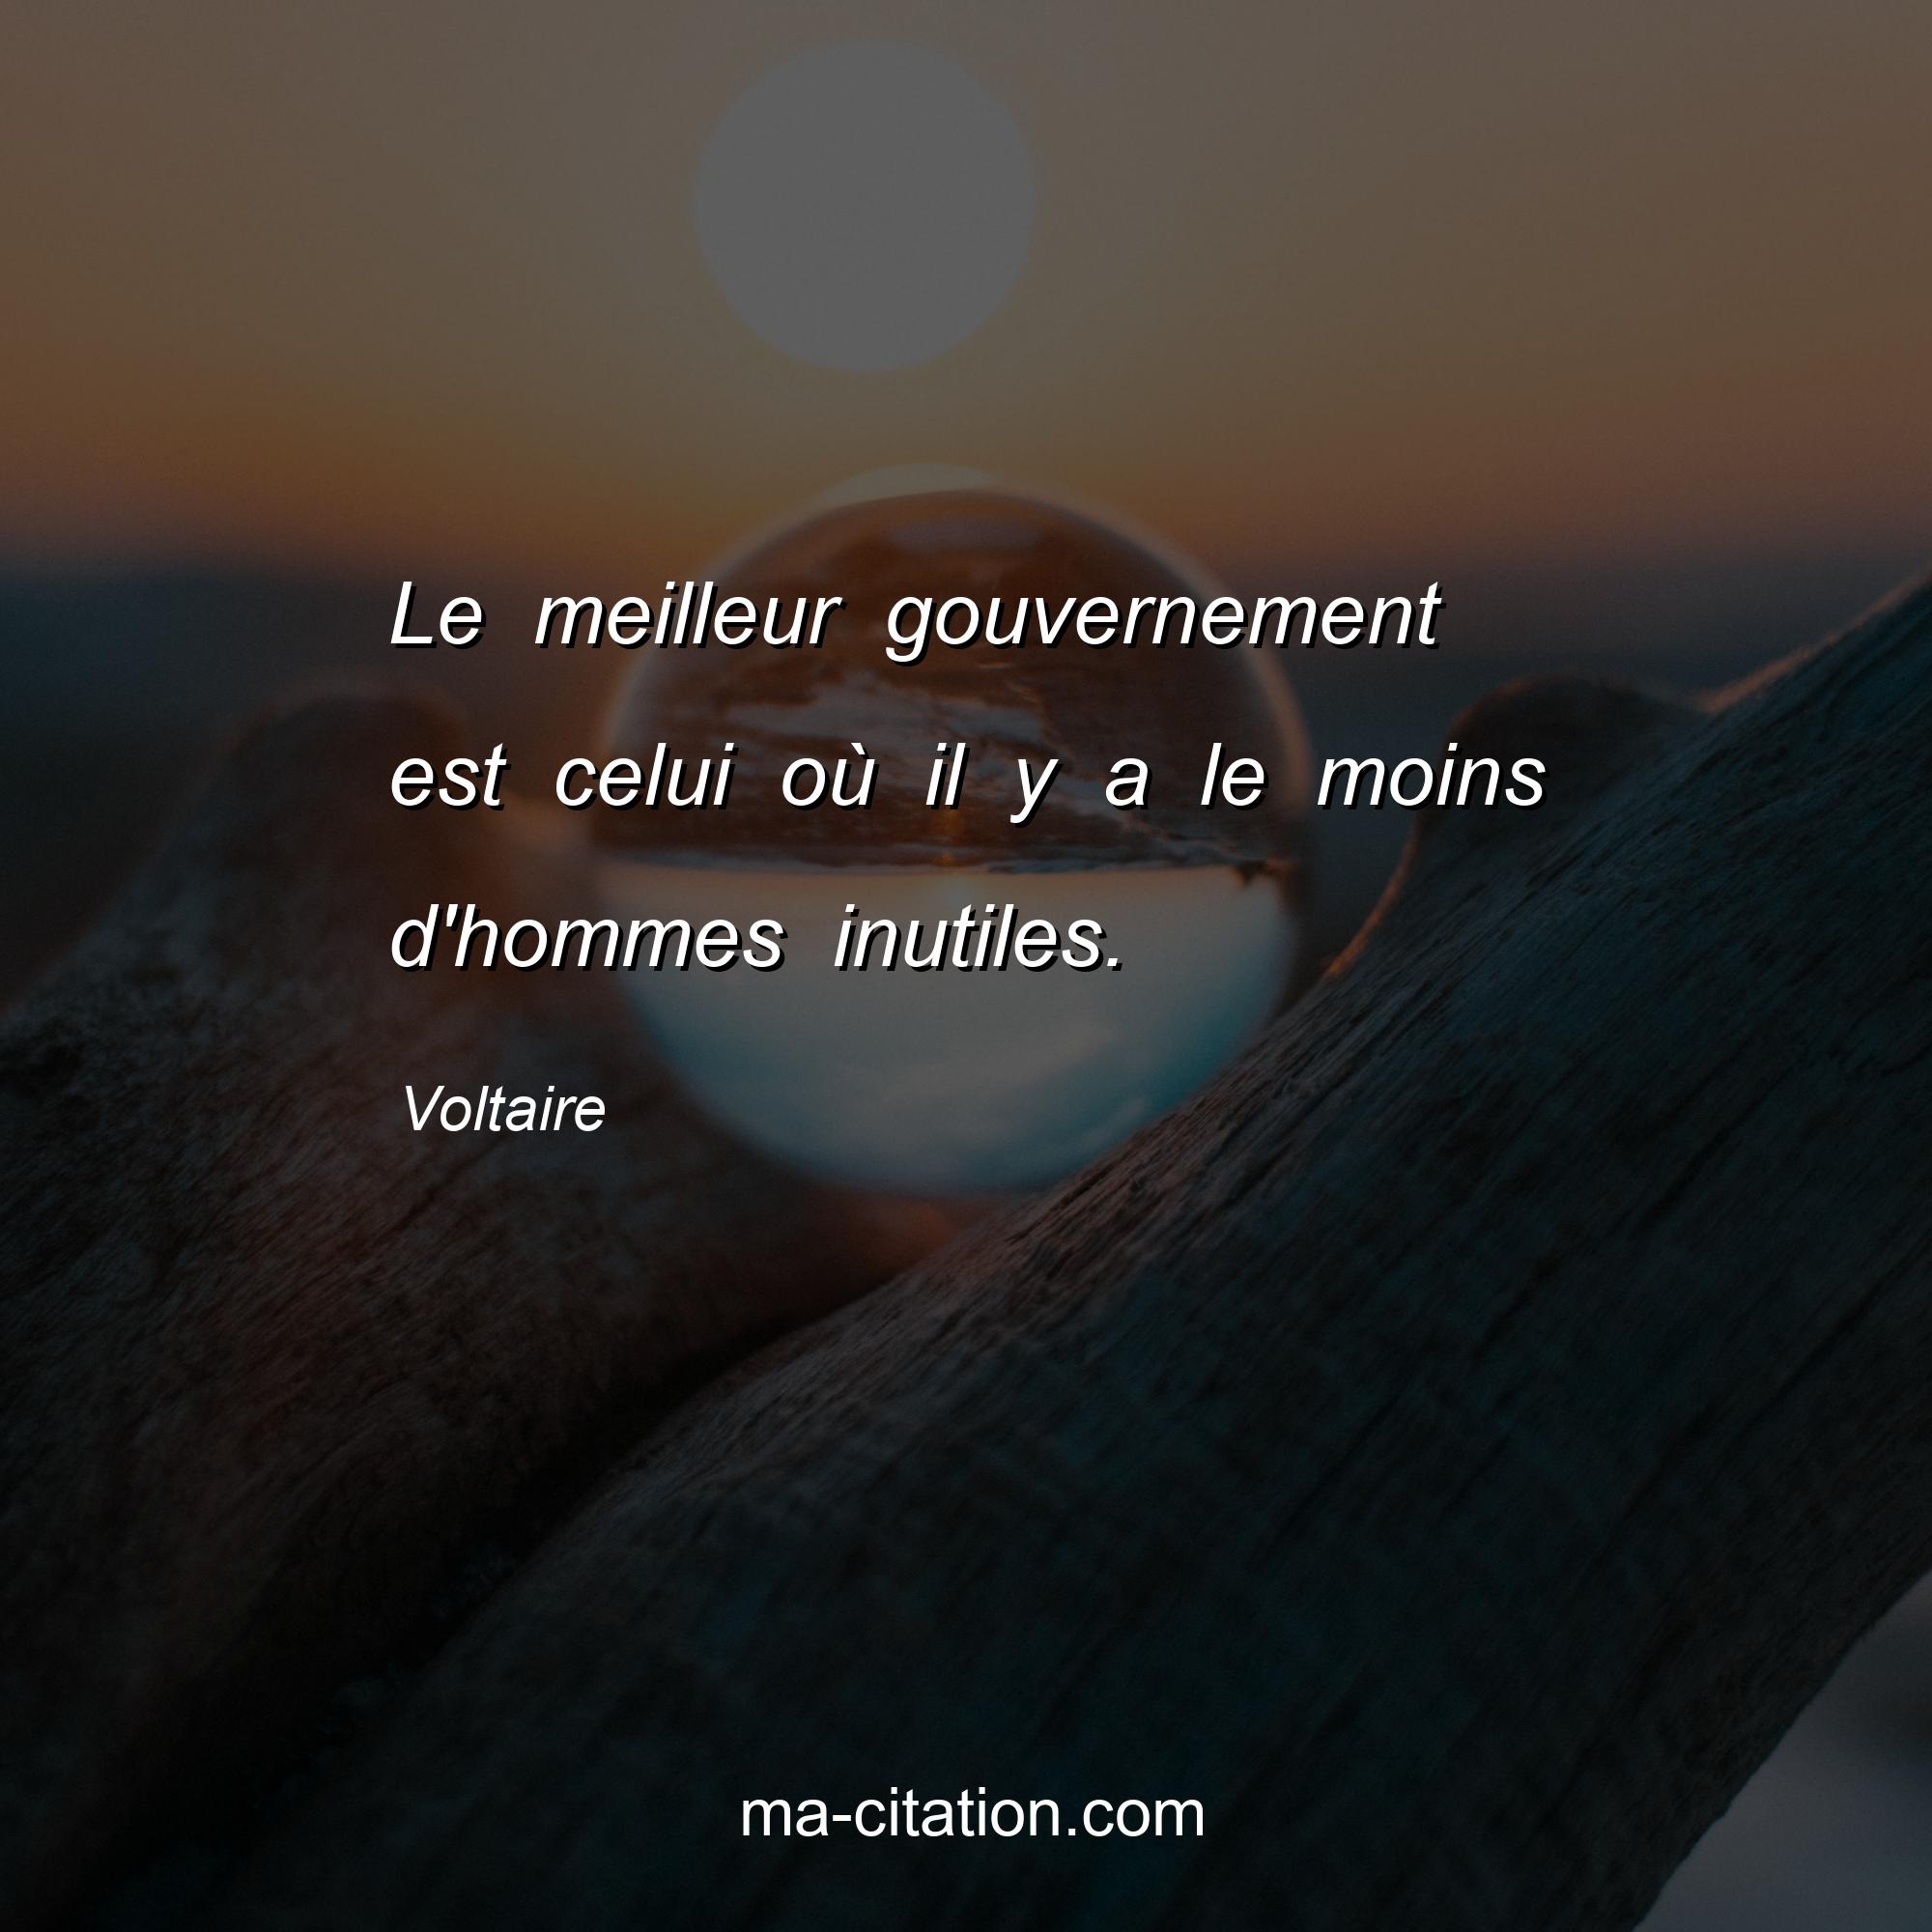 Voltaire : Le meilleur gouvernement est celui où il y a le moins d'hommes inutiles.